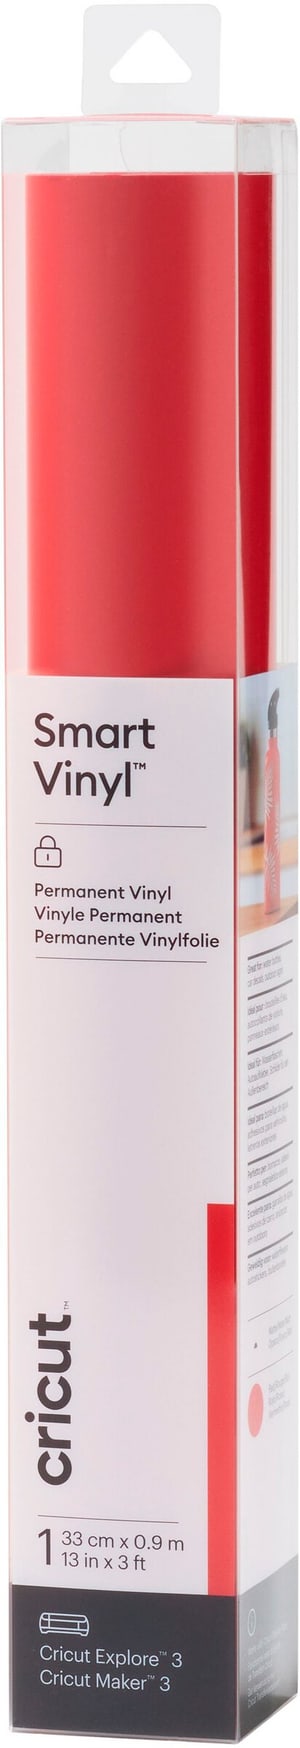 Vinylfolie Smart Matt Permanent 33 x 91 cm, Rot